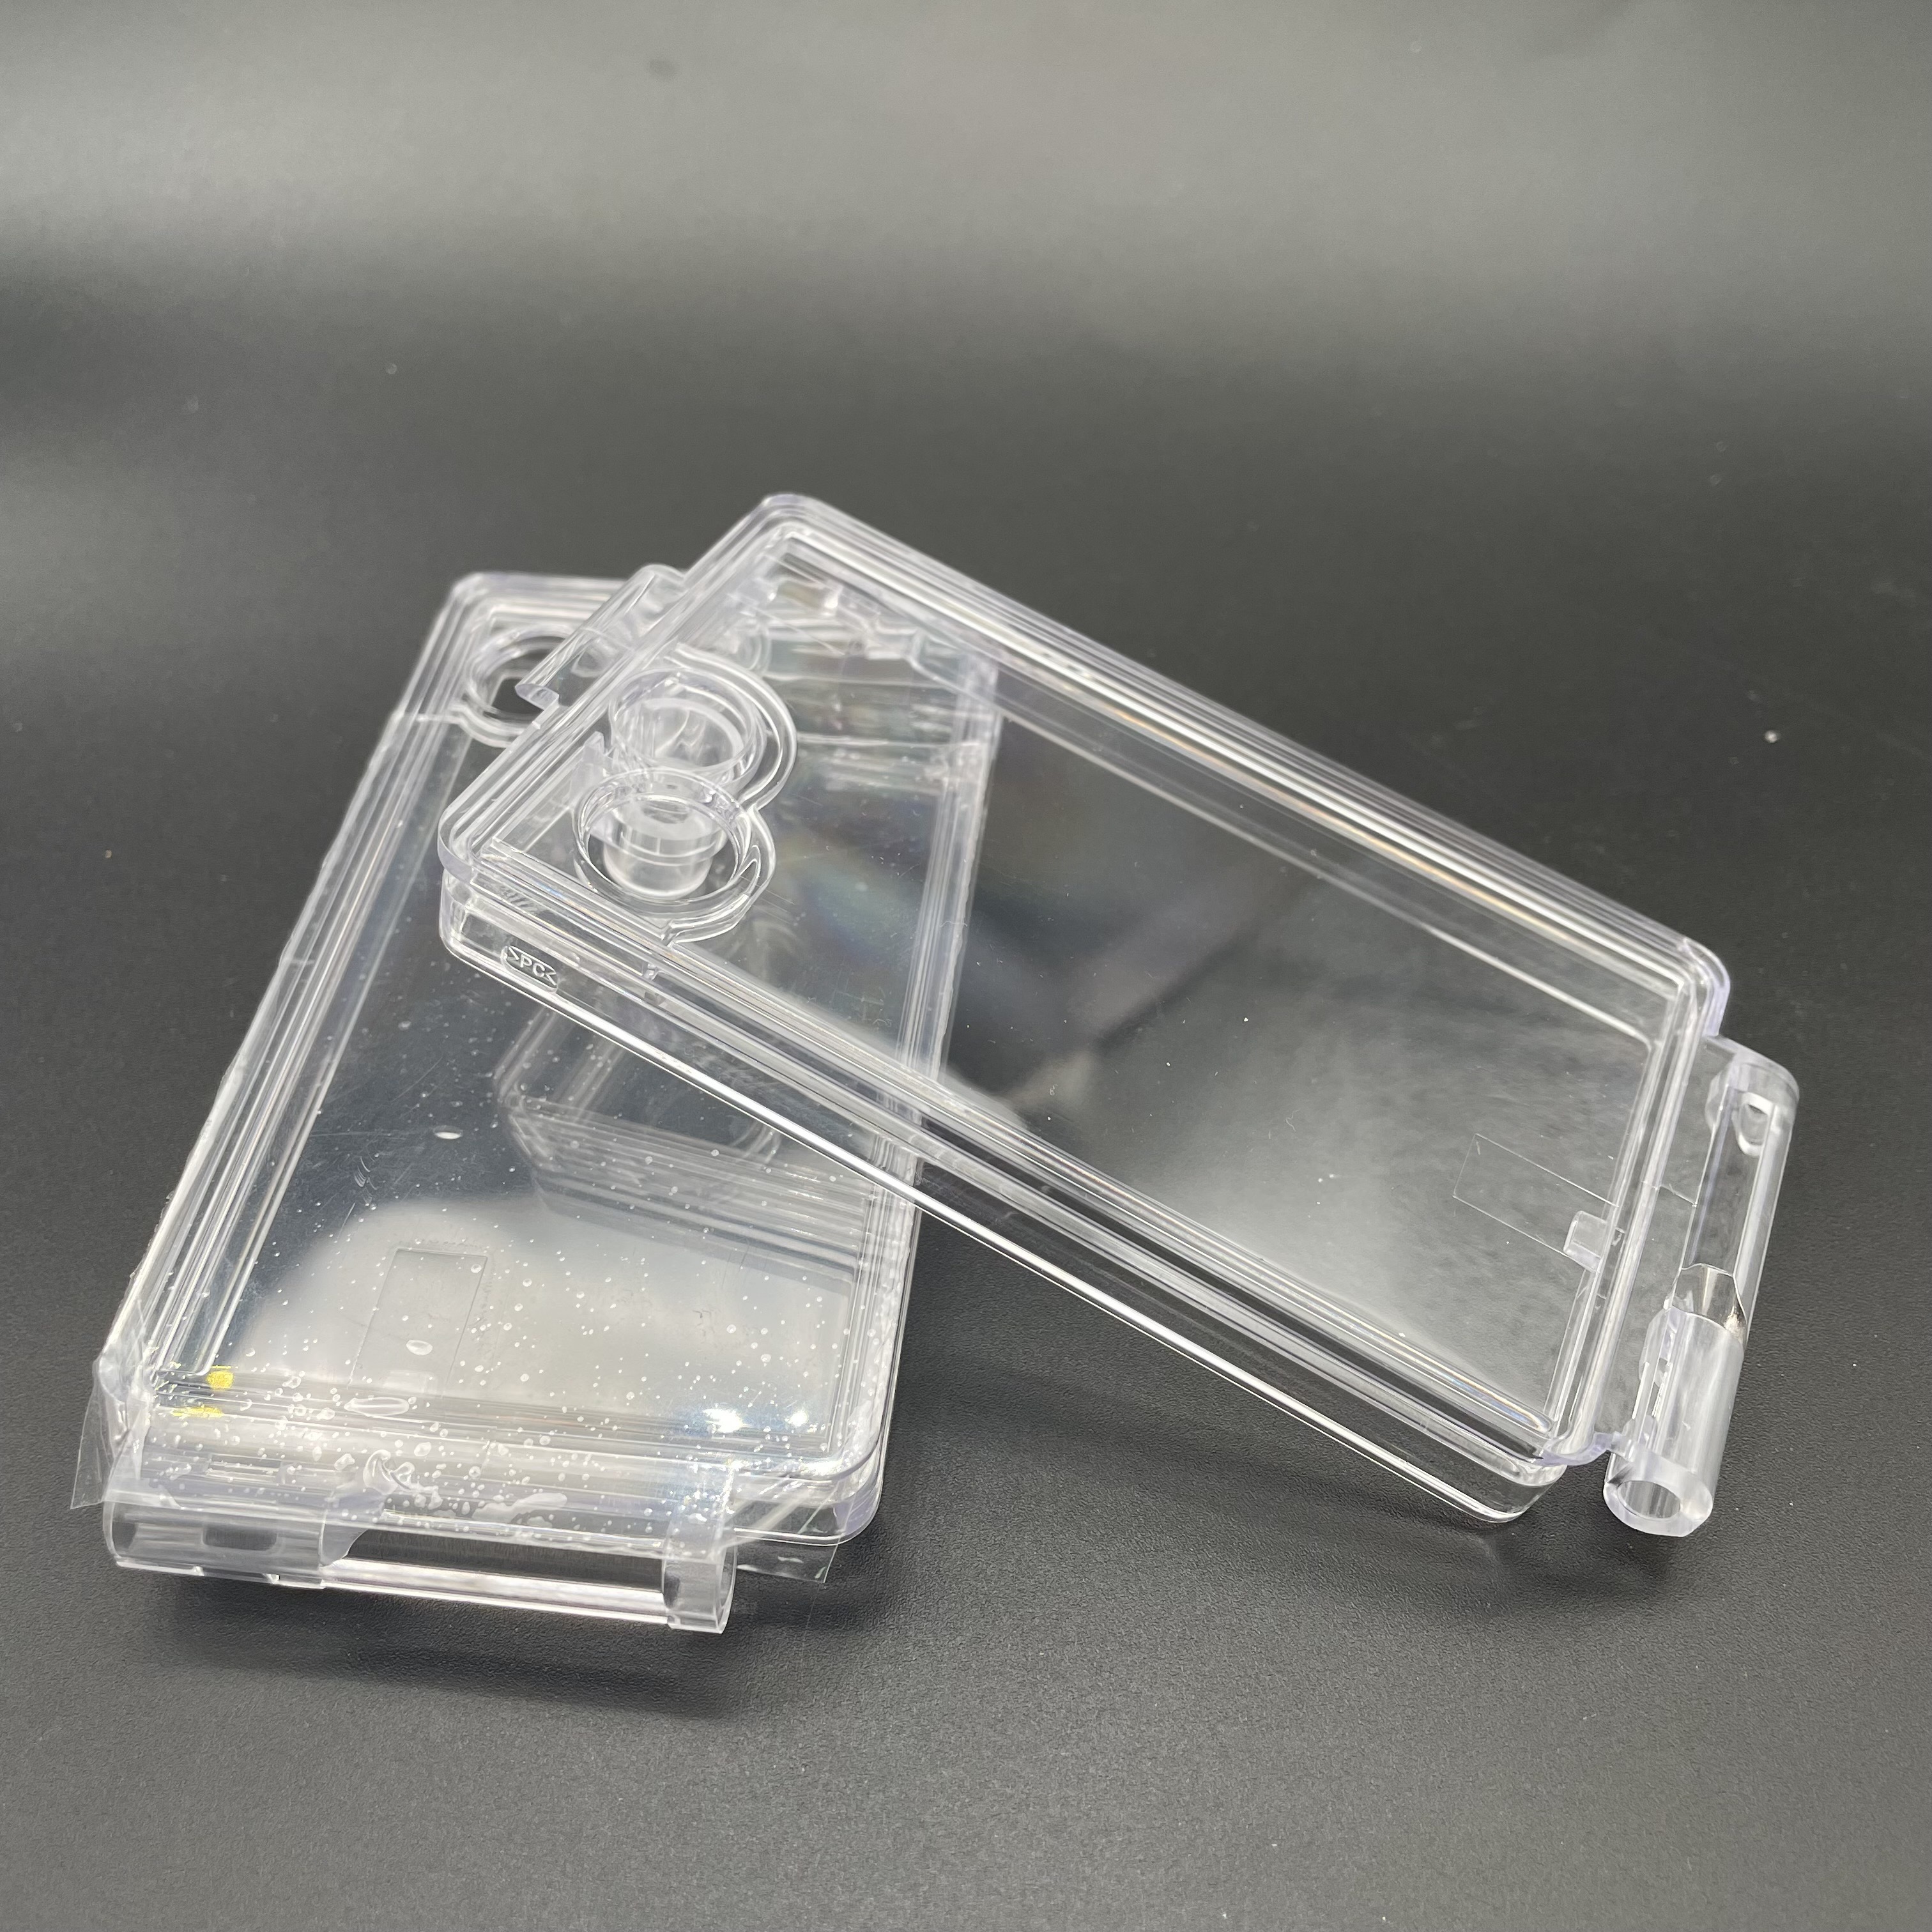 嘉兴市透明塑料盖 嘉兴塑胶模具厂厂家透明塑料盖 嘉兴塑胶模具厂 注塑加工 PC产品 塑胶外壳